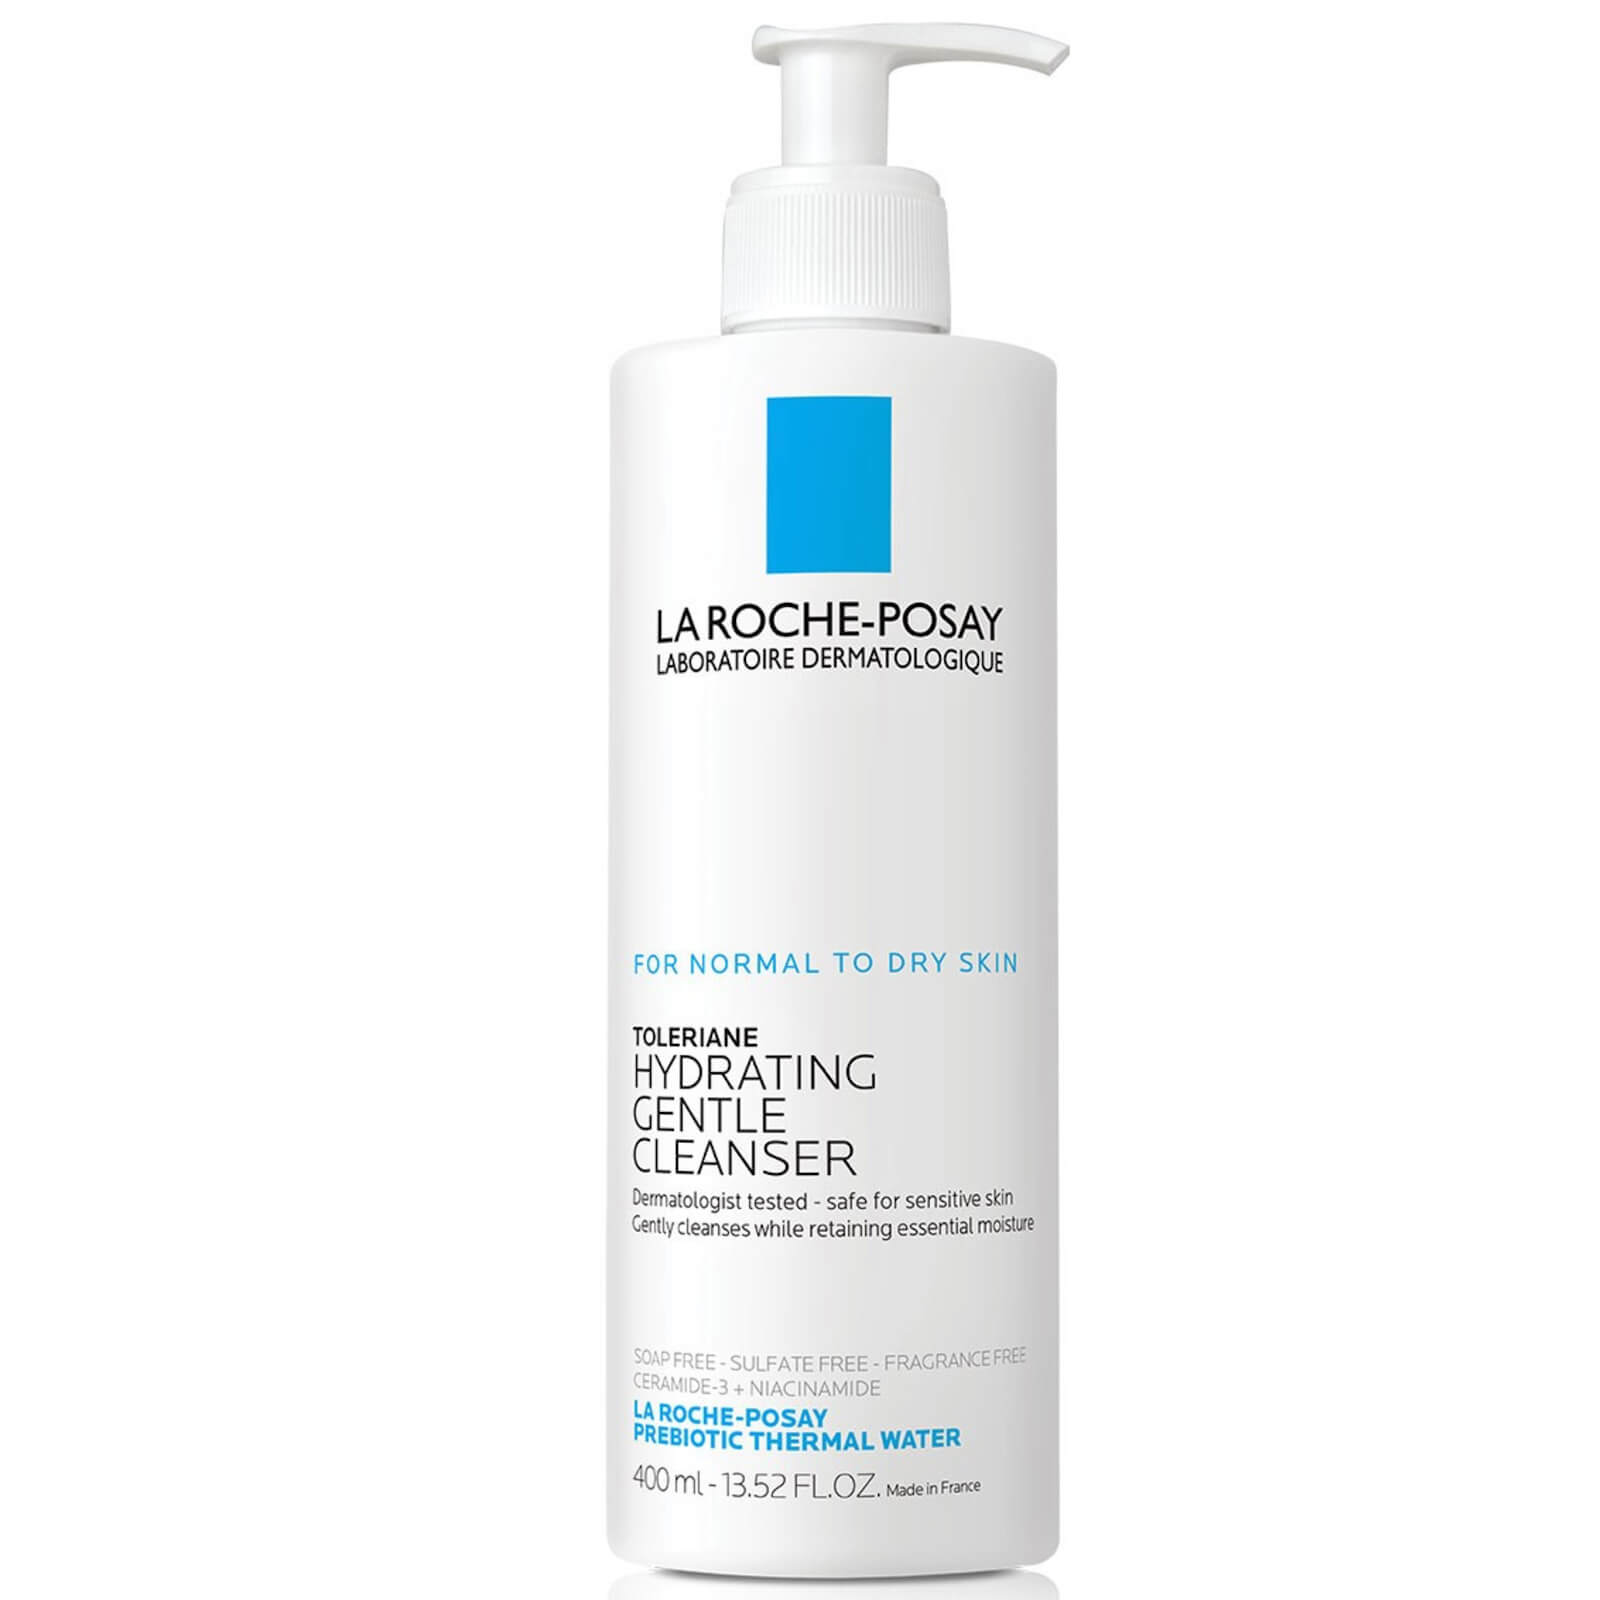 La Roche-posay Toleriane Hydrating Gentle Cleanser - 400ml